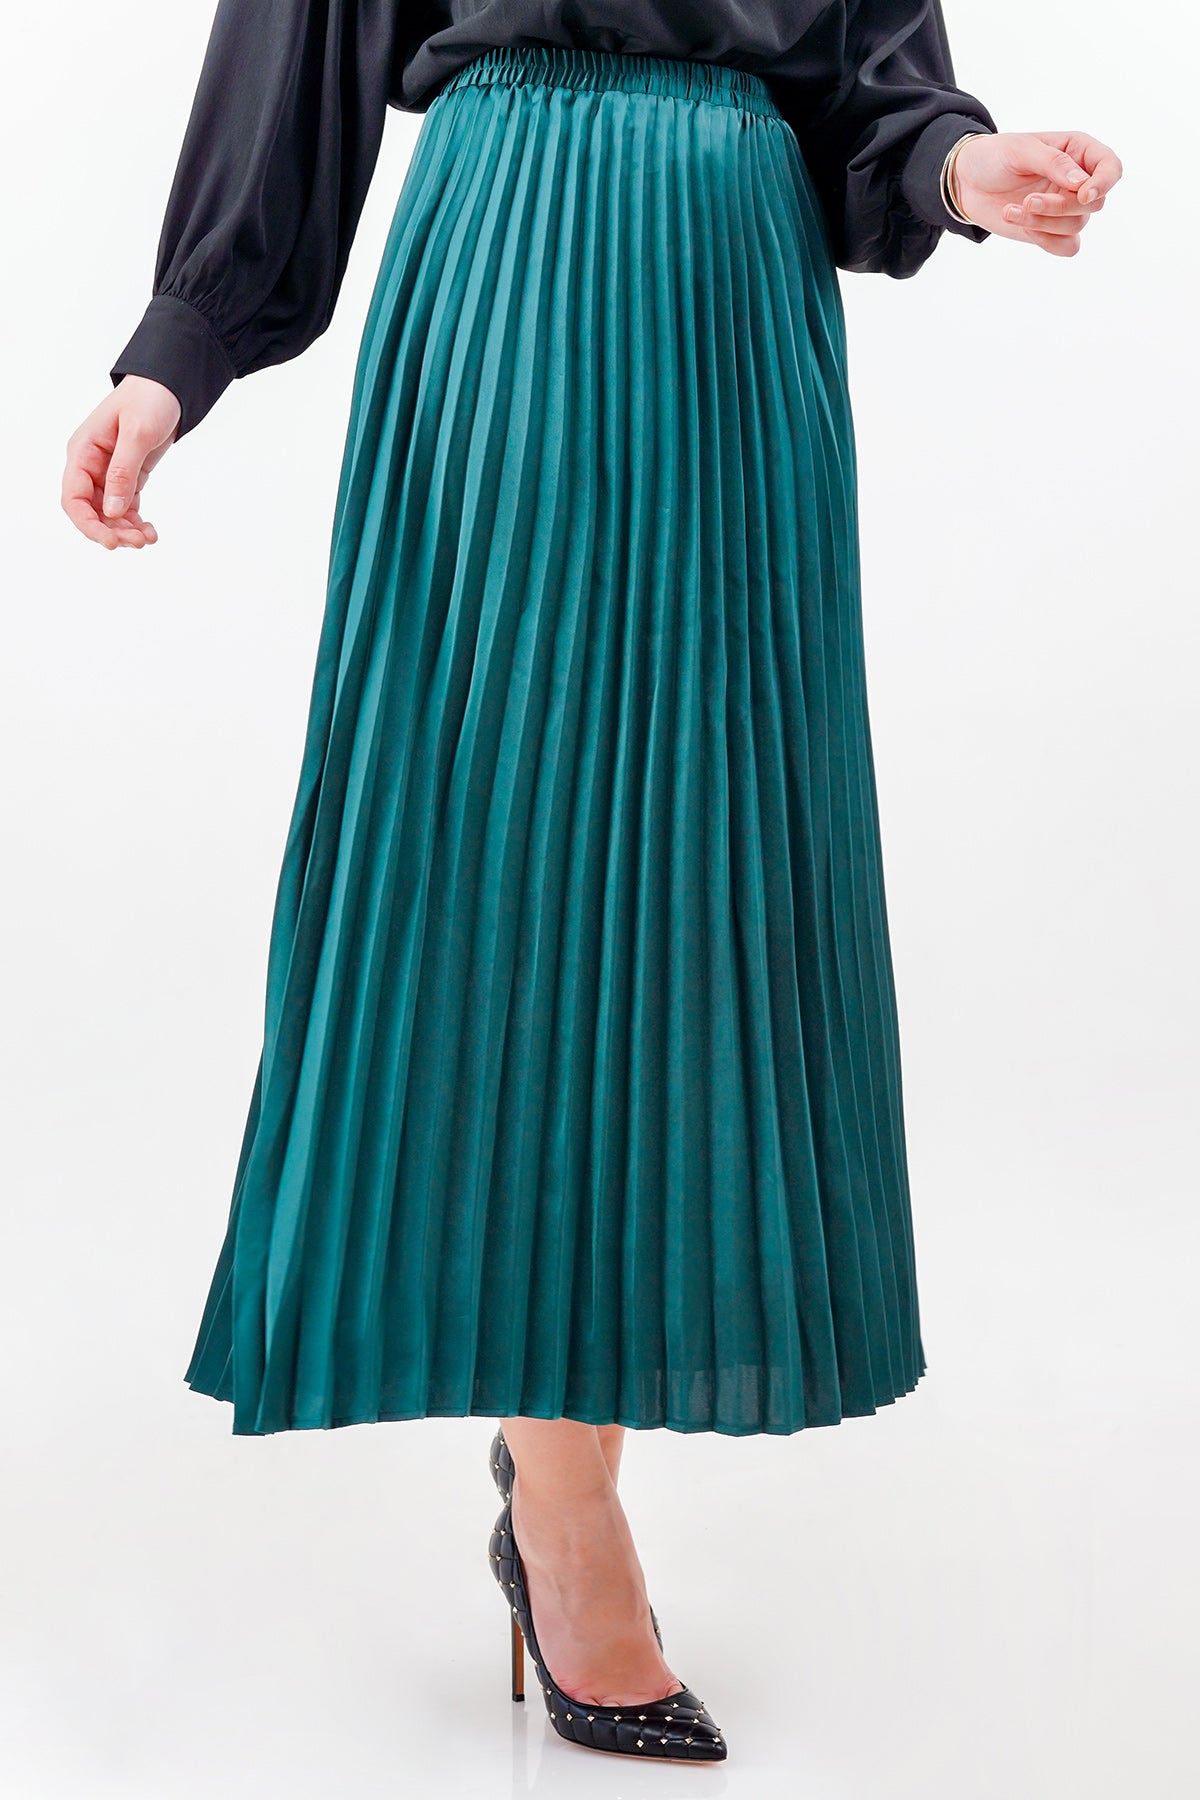 Satin Pleats Skirt - Fern